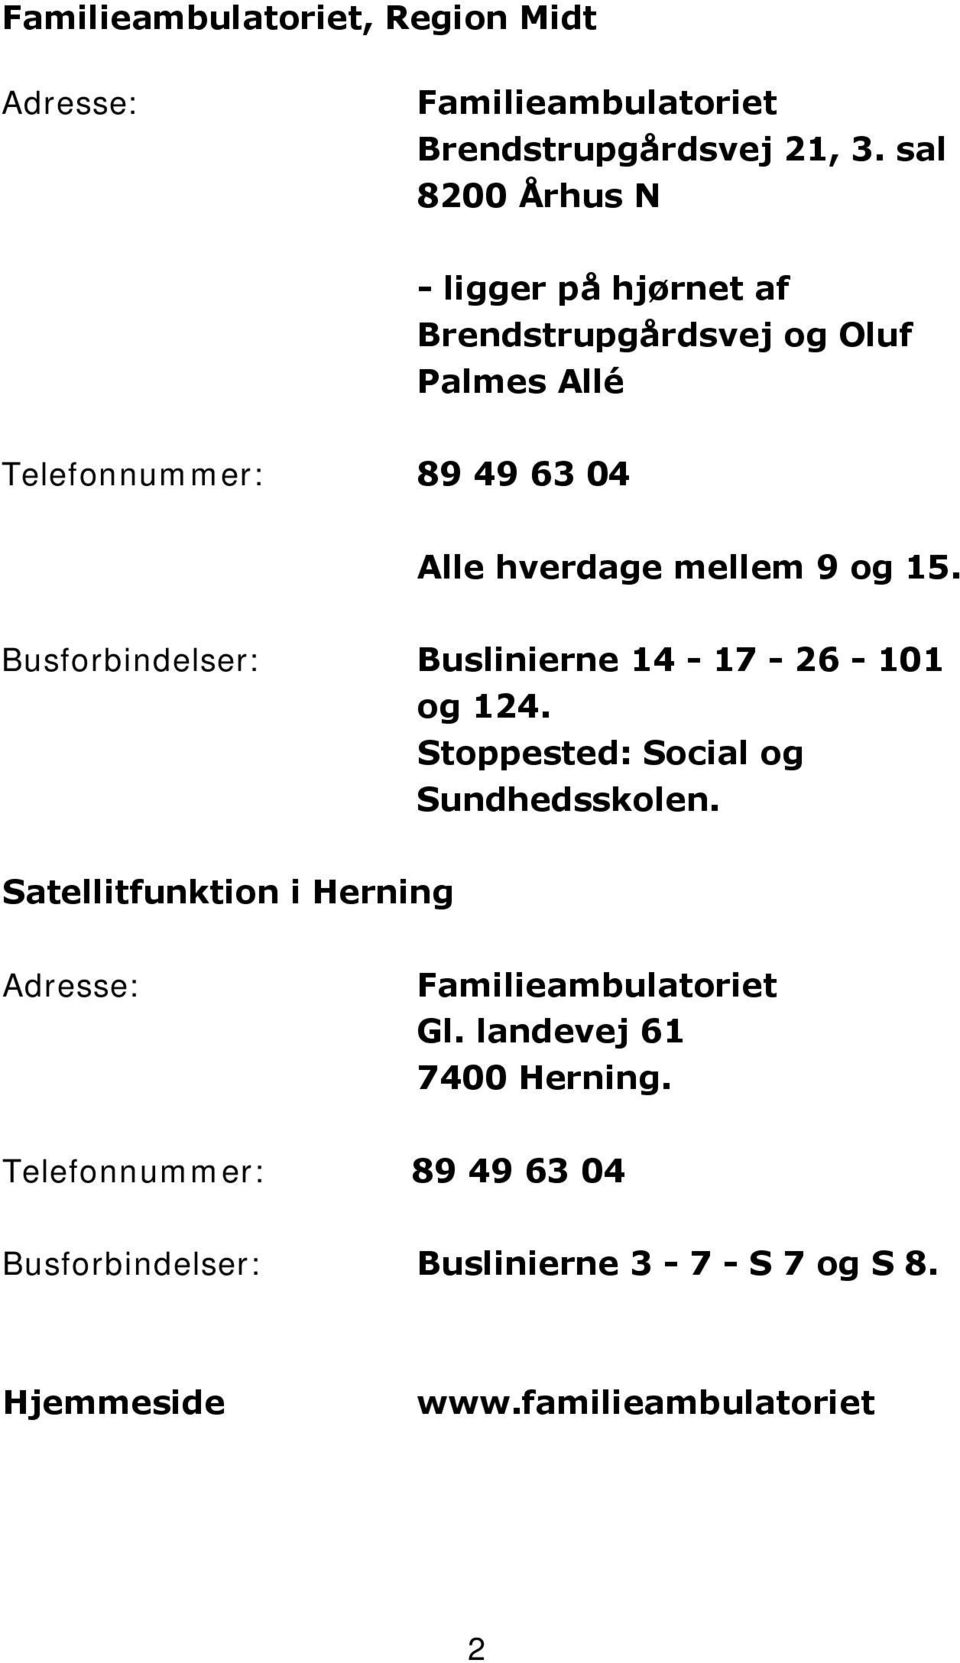 9 og 15. Busforbindelser: Buslinierne 14-17 - 26-101 og 124. Stoppested: Social og Sundhedsskolen.